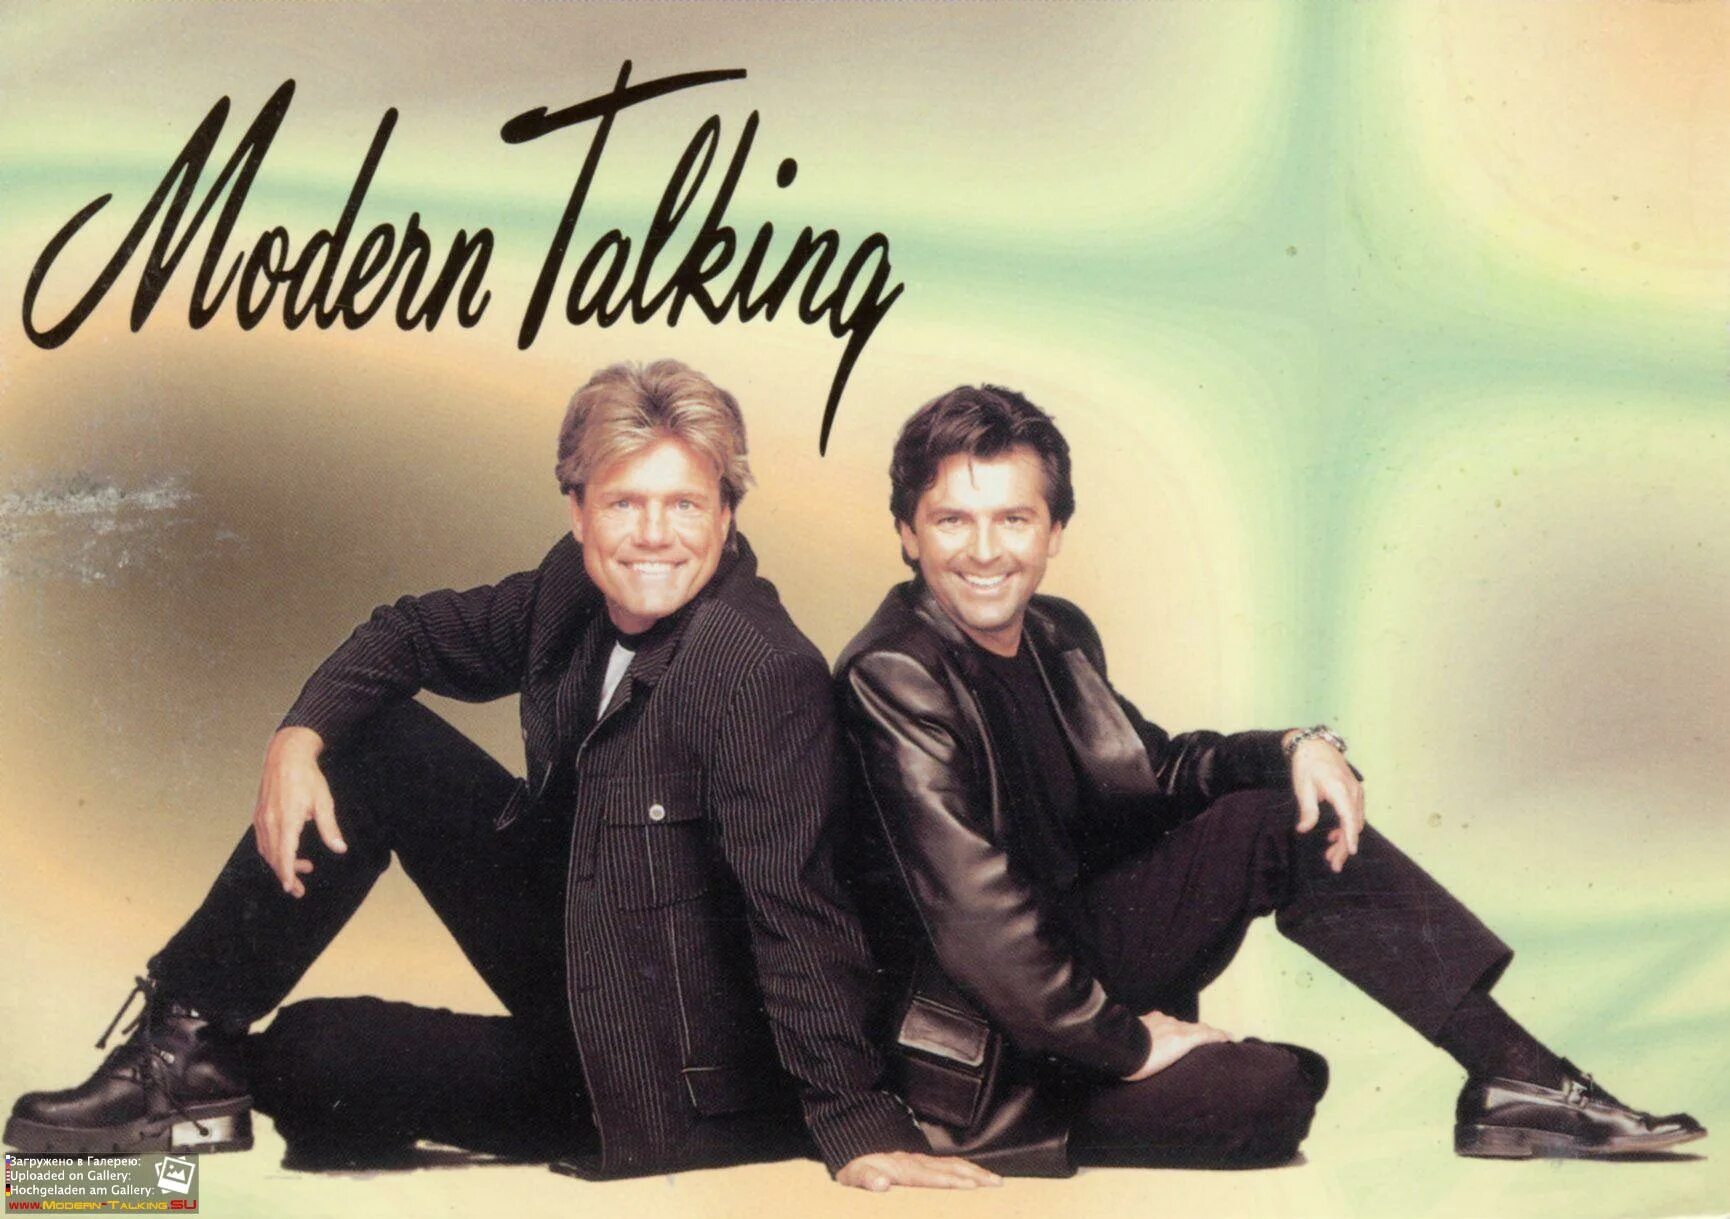 Modern talking racing. Модерн токинг. Группа Модерн токинг. Modern talking 1993.